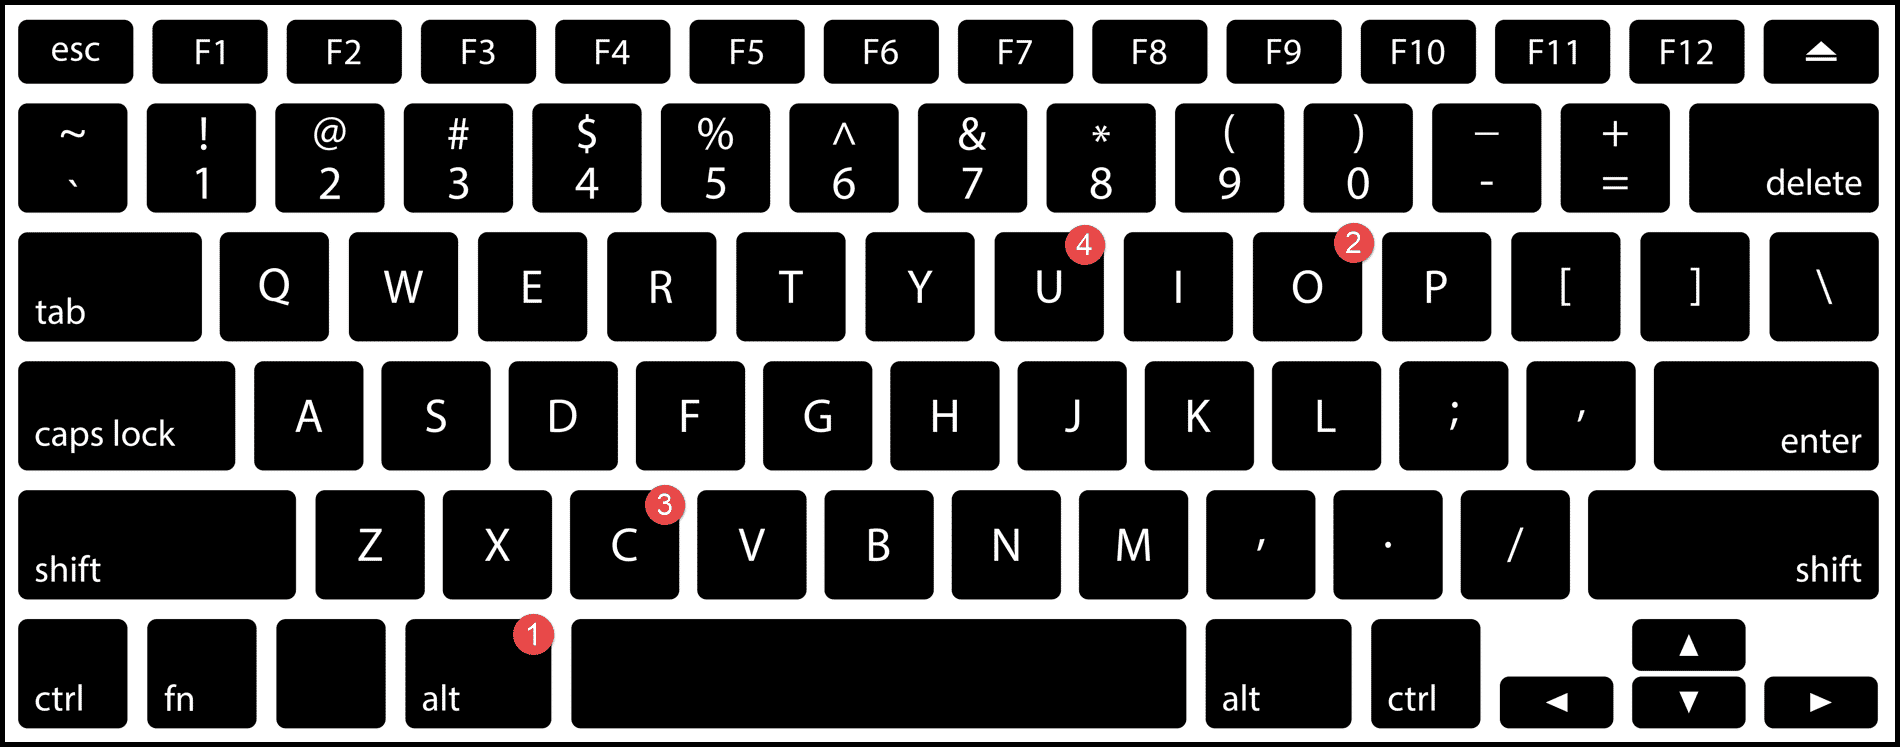 mostrar-columna-usando-atajo-de-teclado